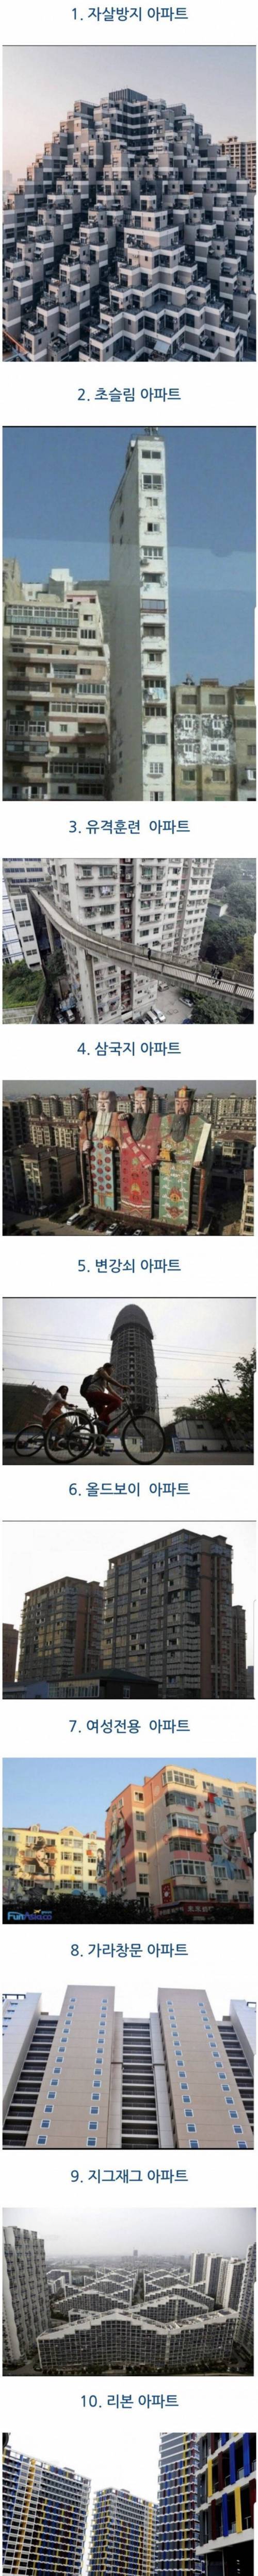 [스압] 중국의 특이한 아파트.jpg